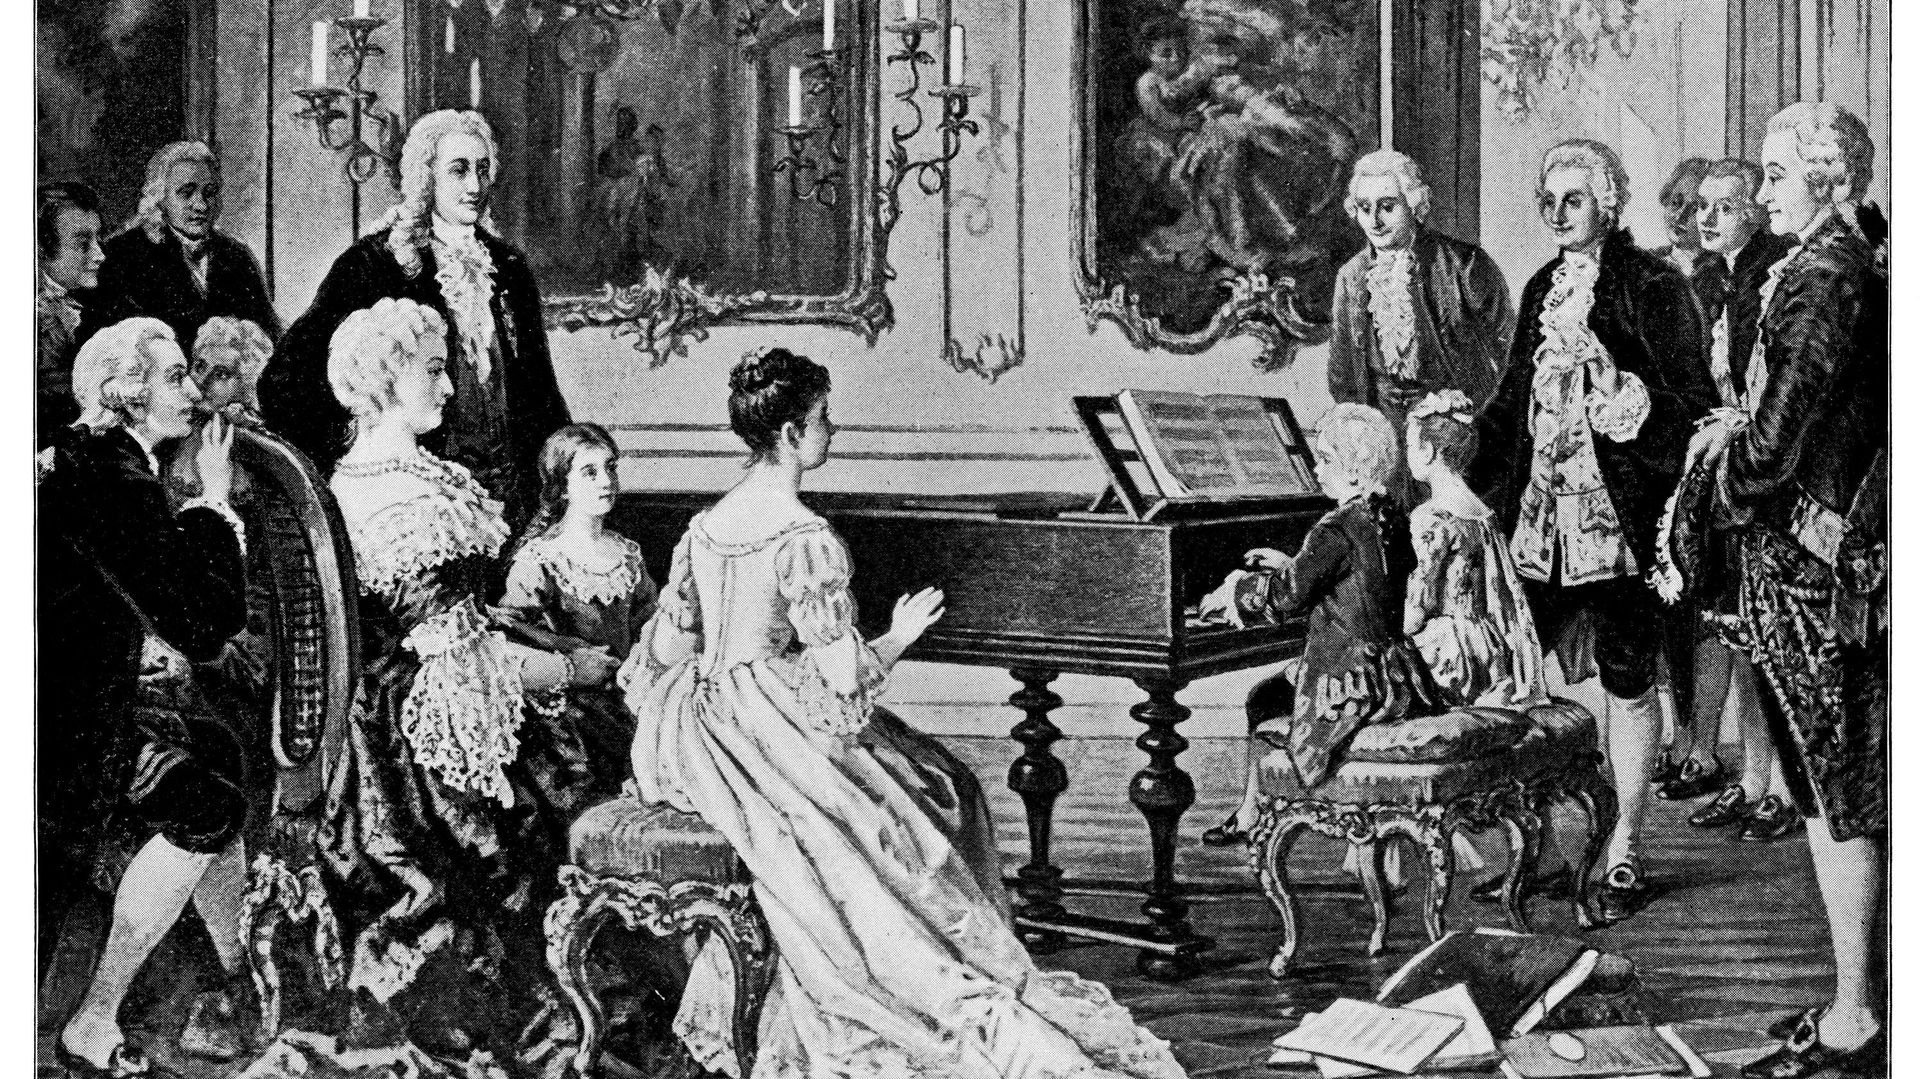 Wolfgang Amadeus Mozart et sa sœur, Maria Anna Mozart, jouent pour l’impératrice Maria Theresa, gravure d’August Borckmann